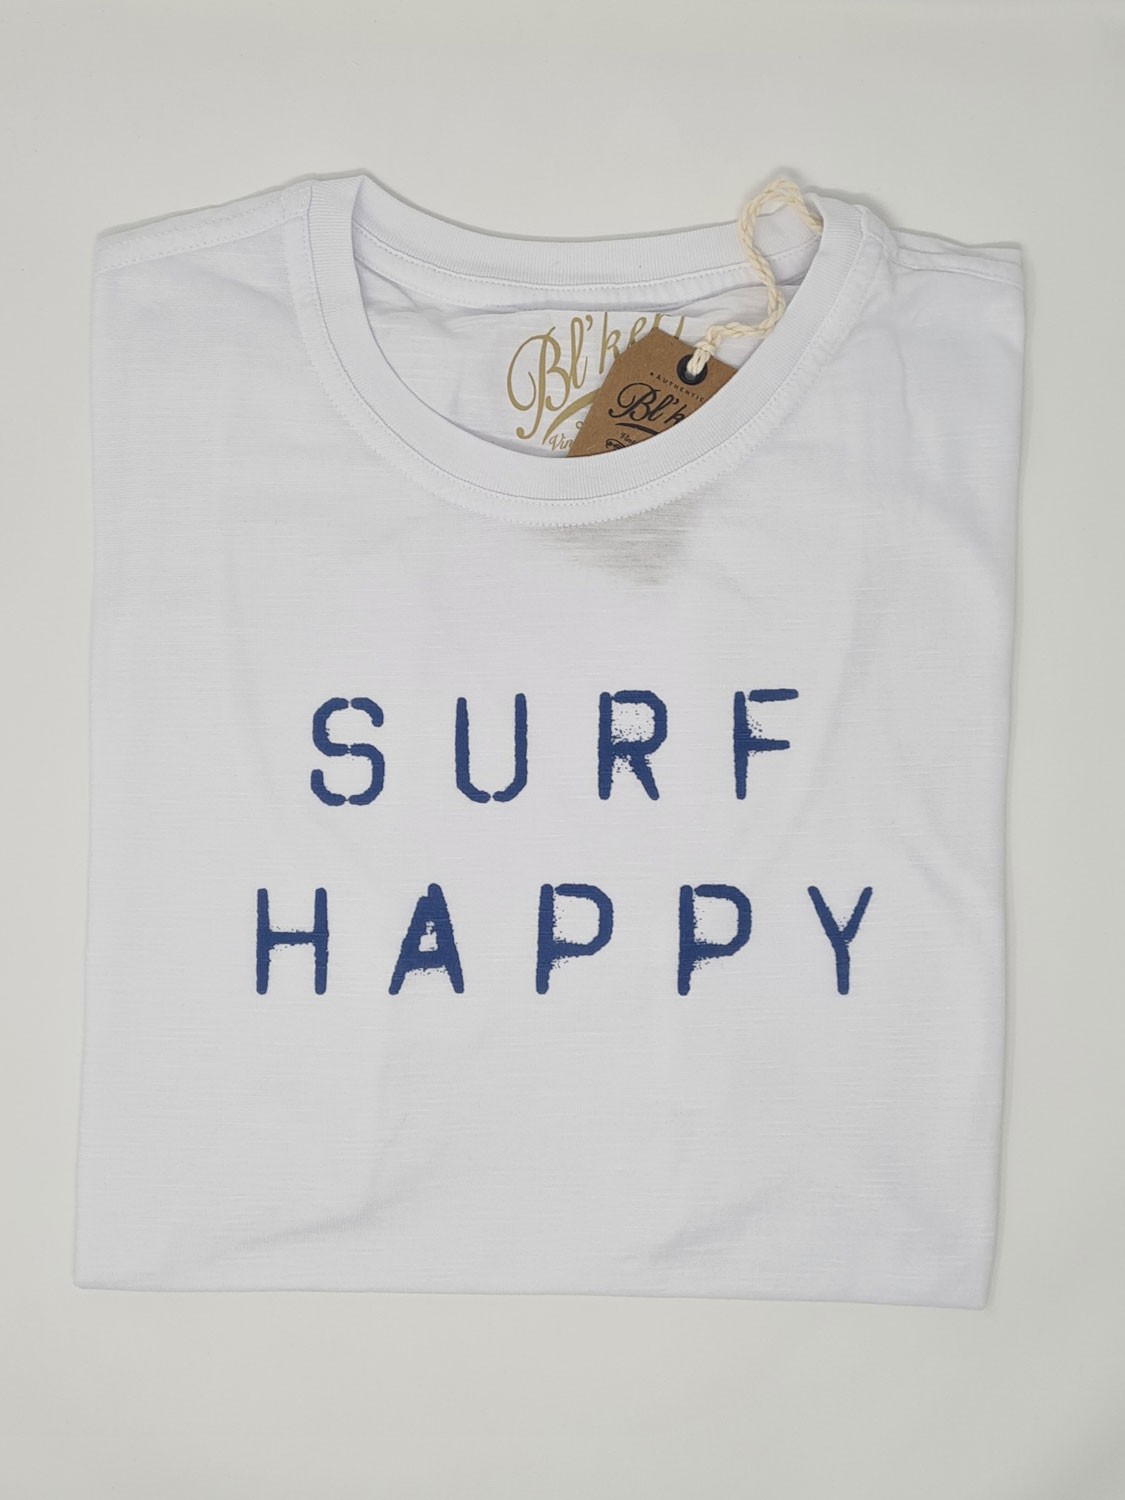 Bl'ker Men's T-shirt Graphic Surf Happy